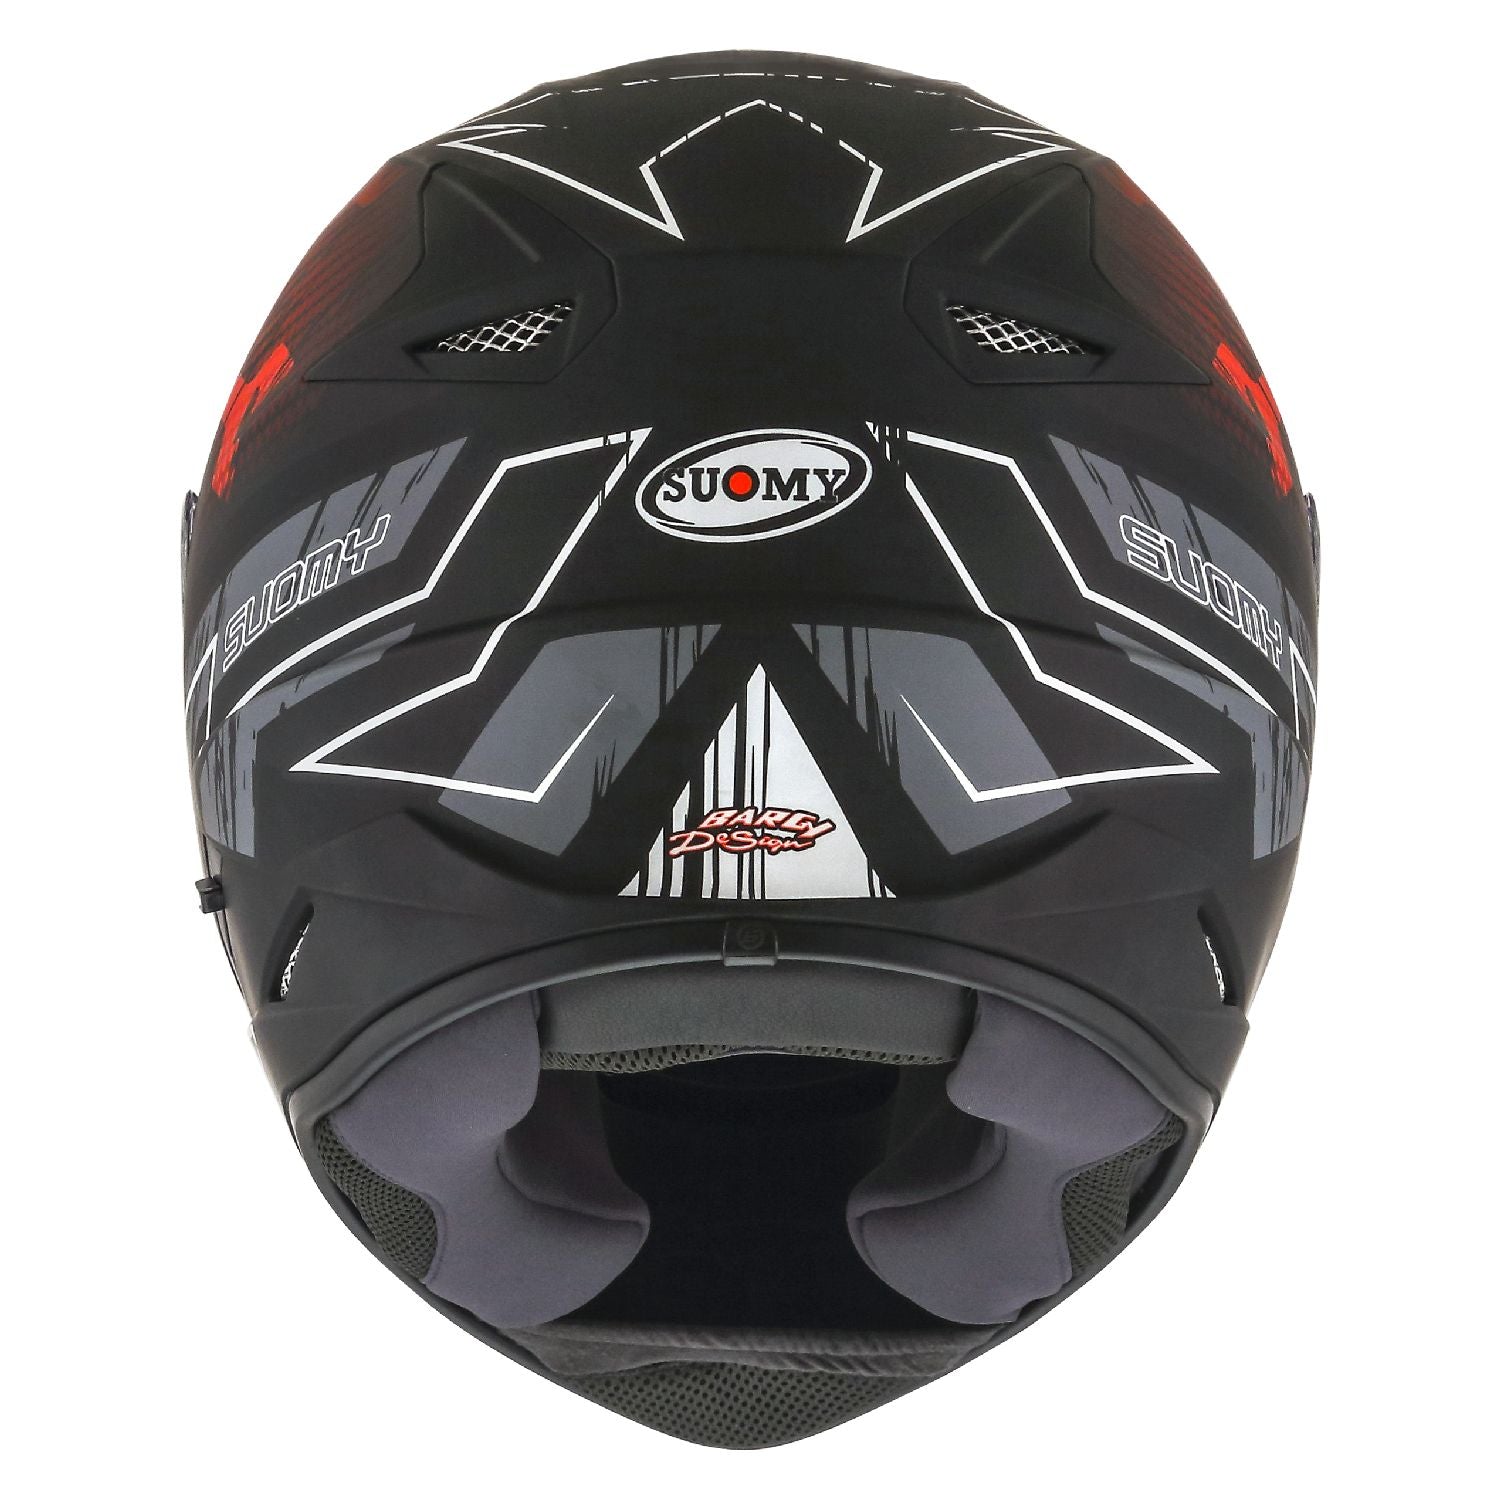 Suomy Stellar Phantom Matt Full Face Motorcycle Helmet (XS - 2XL)